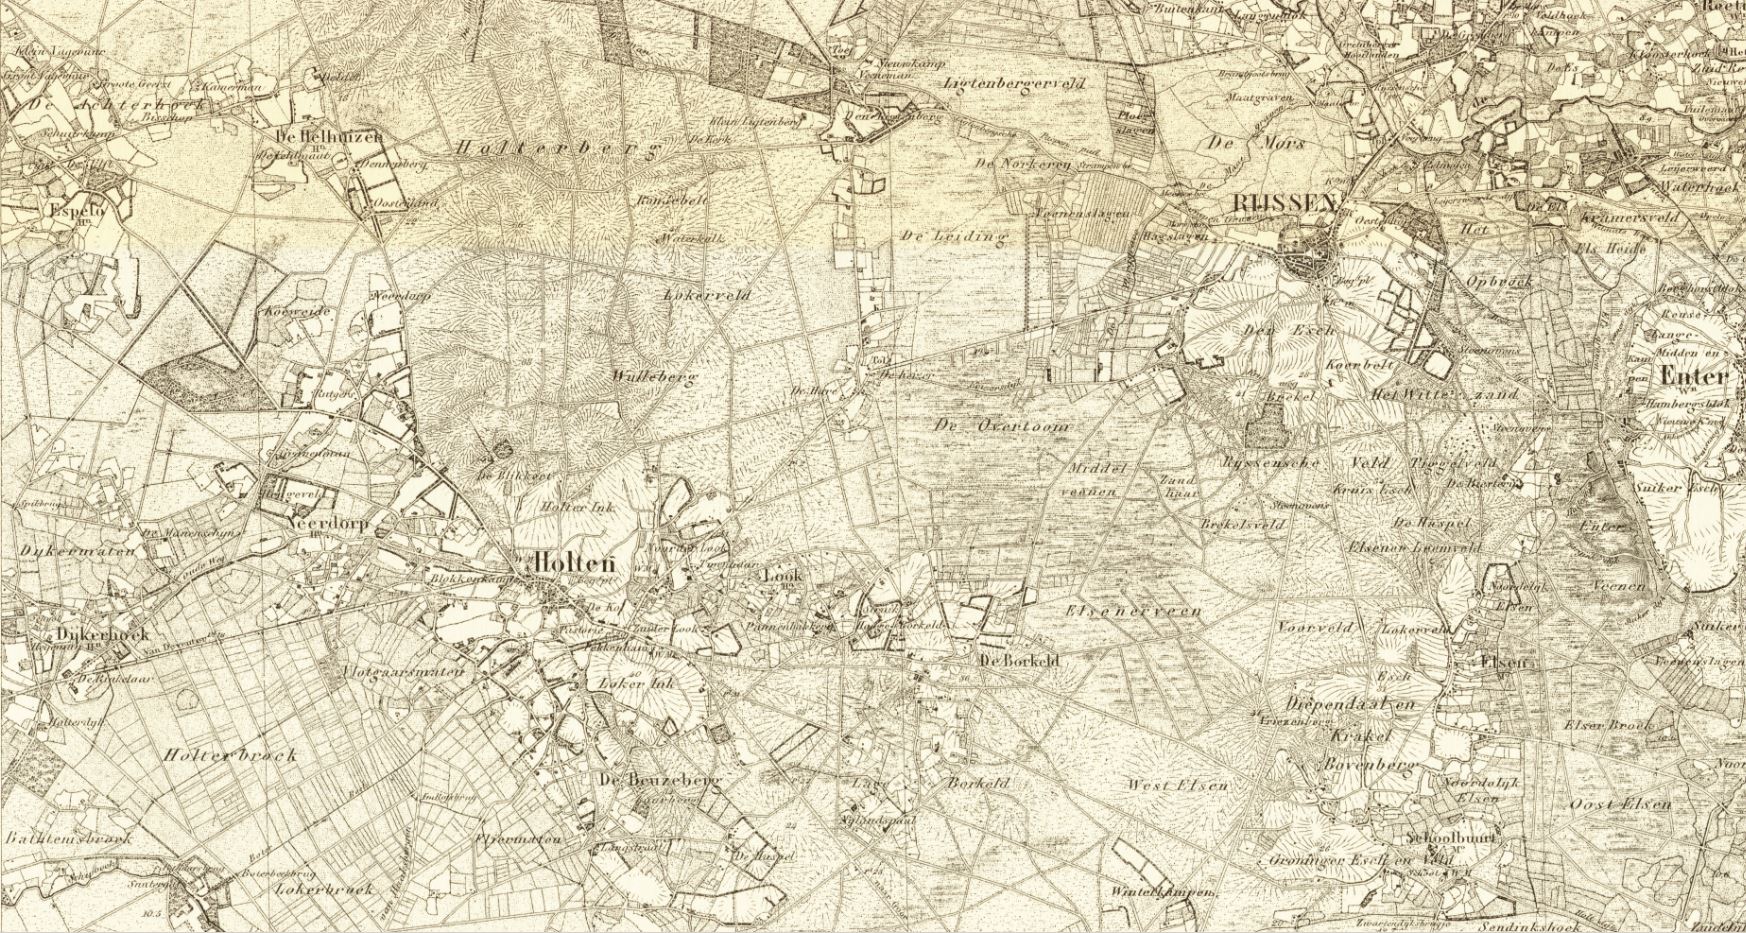 Topografische kaart van Rijssen en Holten rond 1850